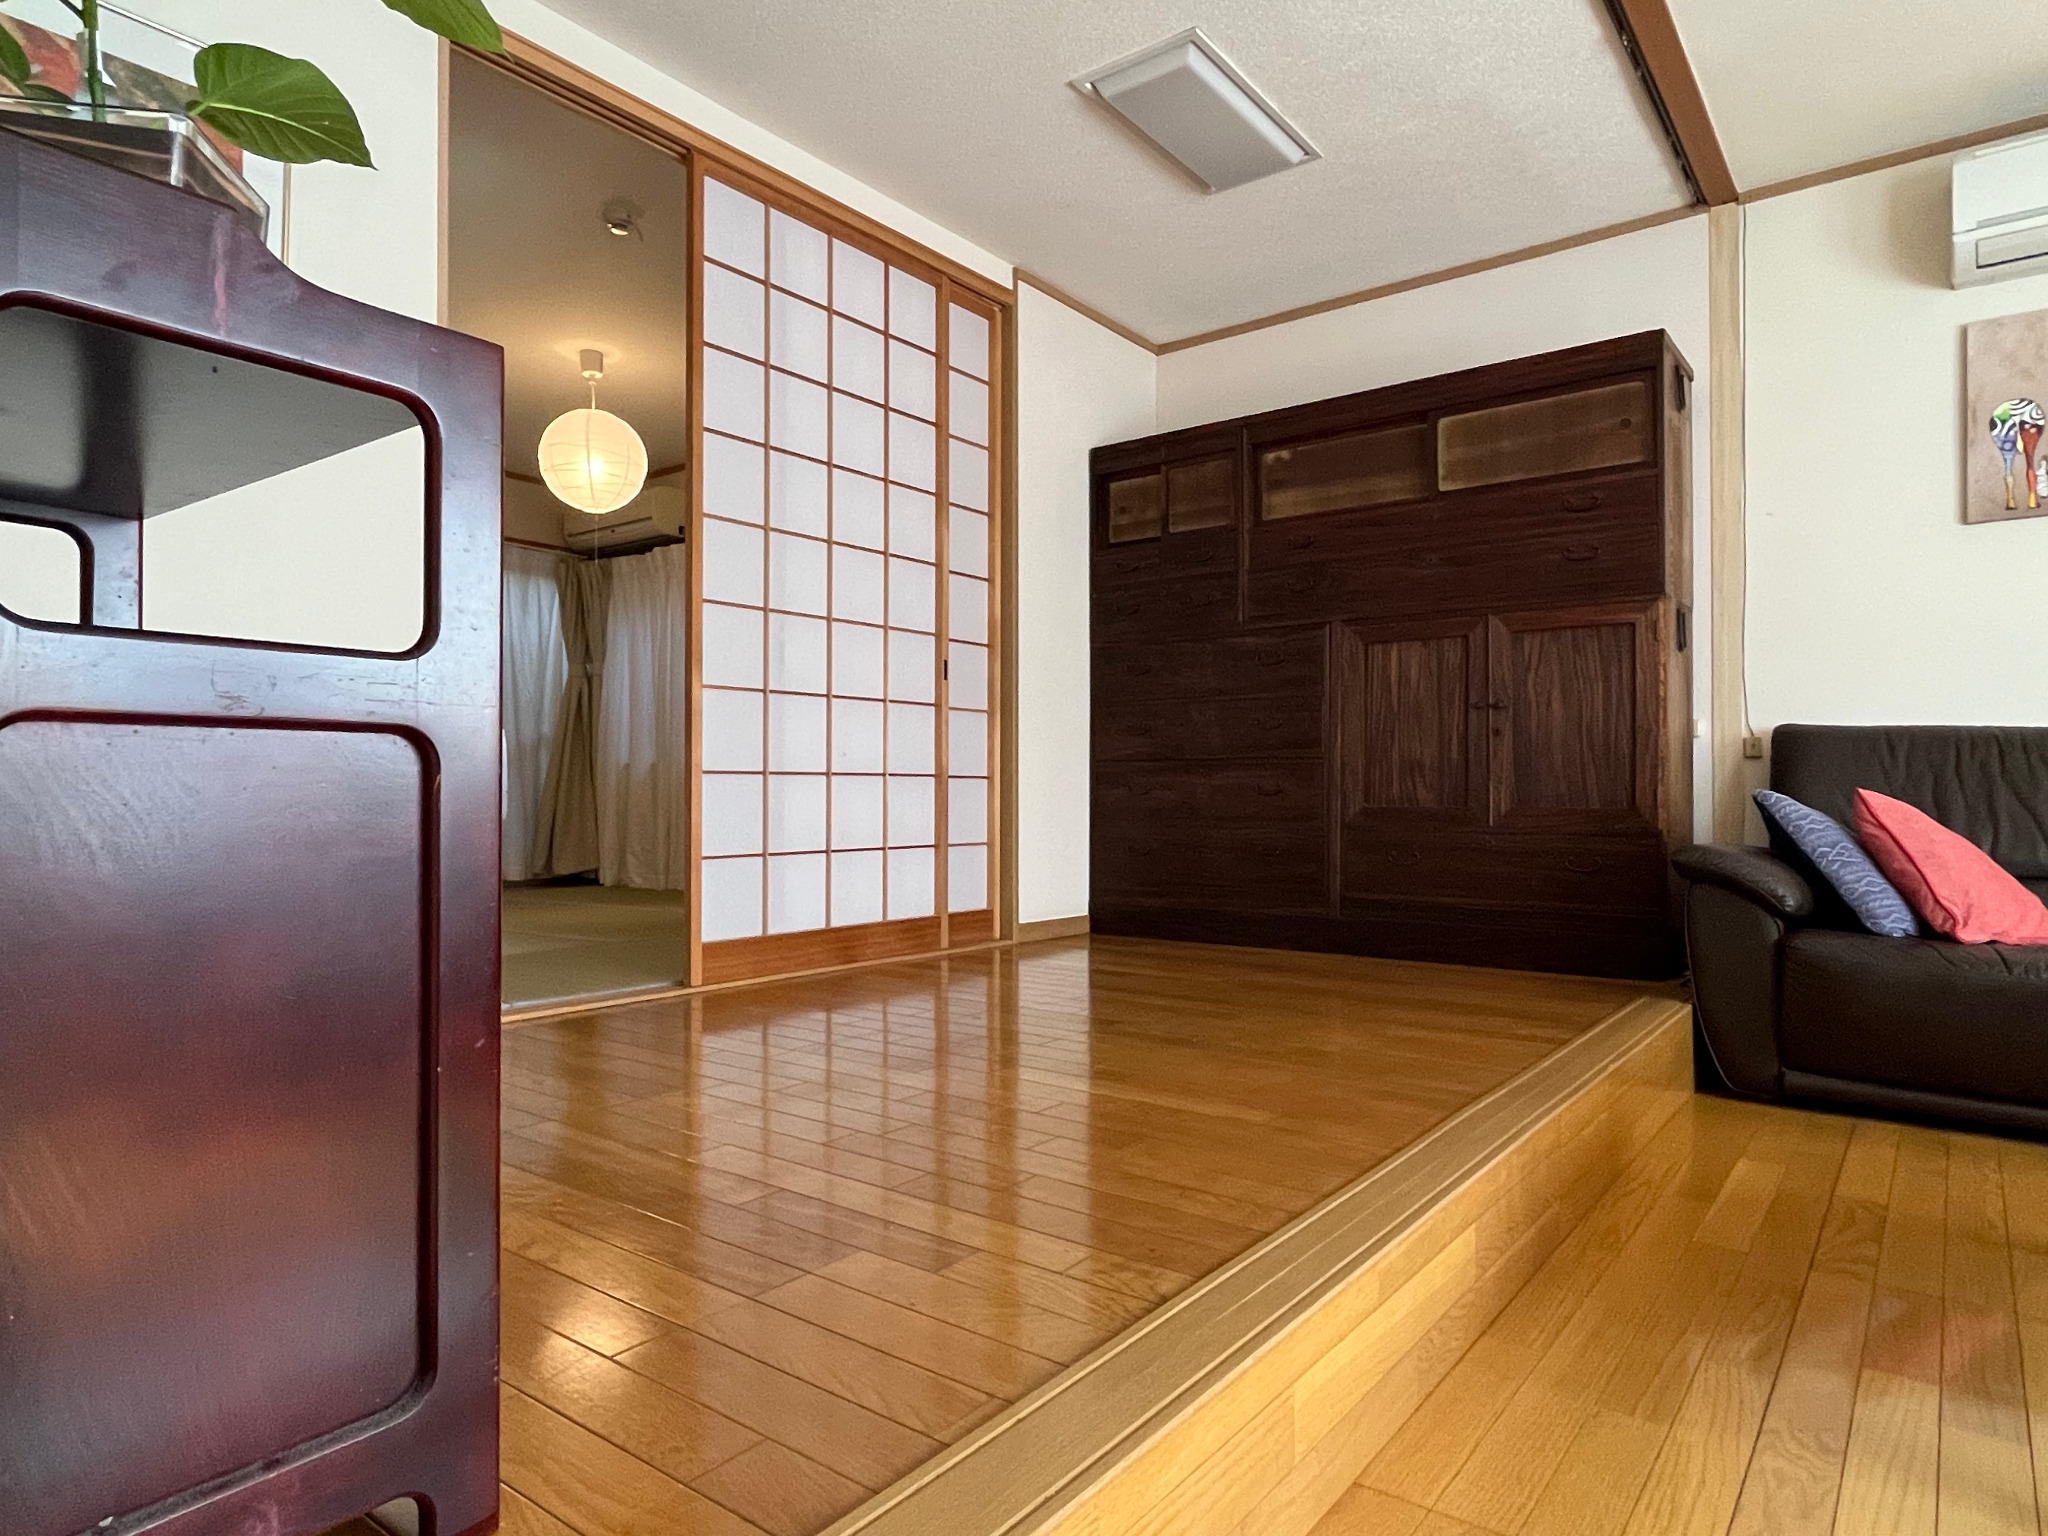 京都の西陣織の一部である千本中立売という歴史的なエリアにある貸し切り別荘